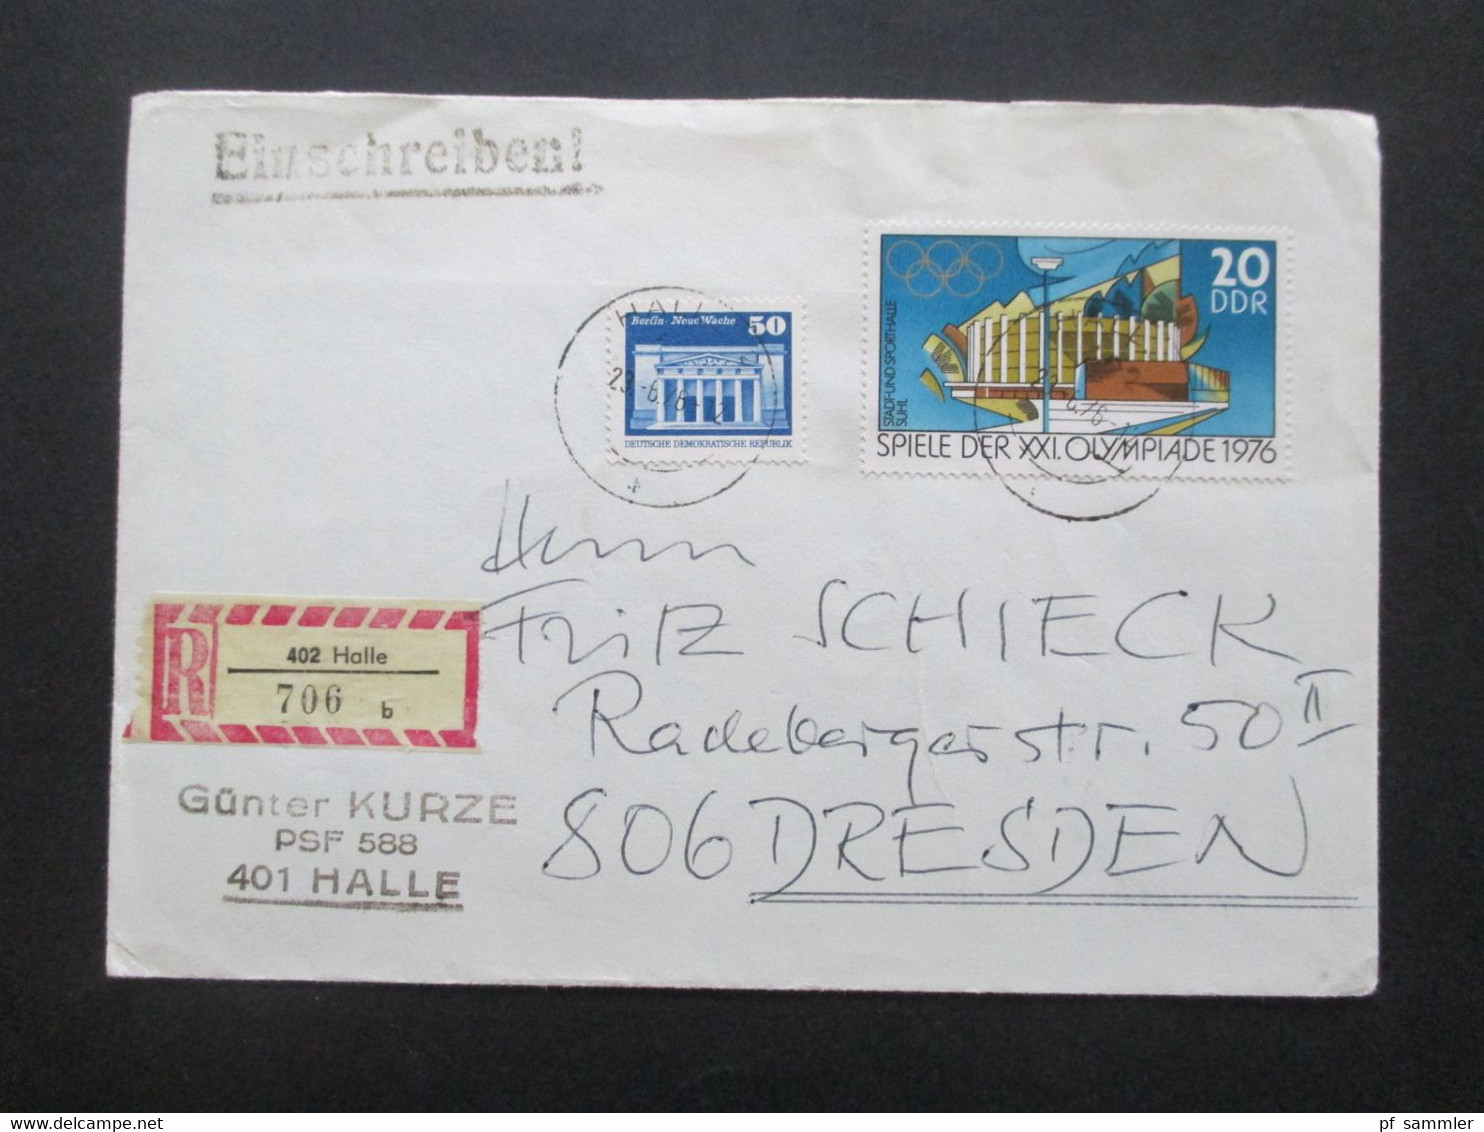 DDR 1970er Jahre insgesamt 28 Belege Wertbriefe / Einschreiben! Schöne Frankaturen / auch Einheiten! Stöberposten!